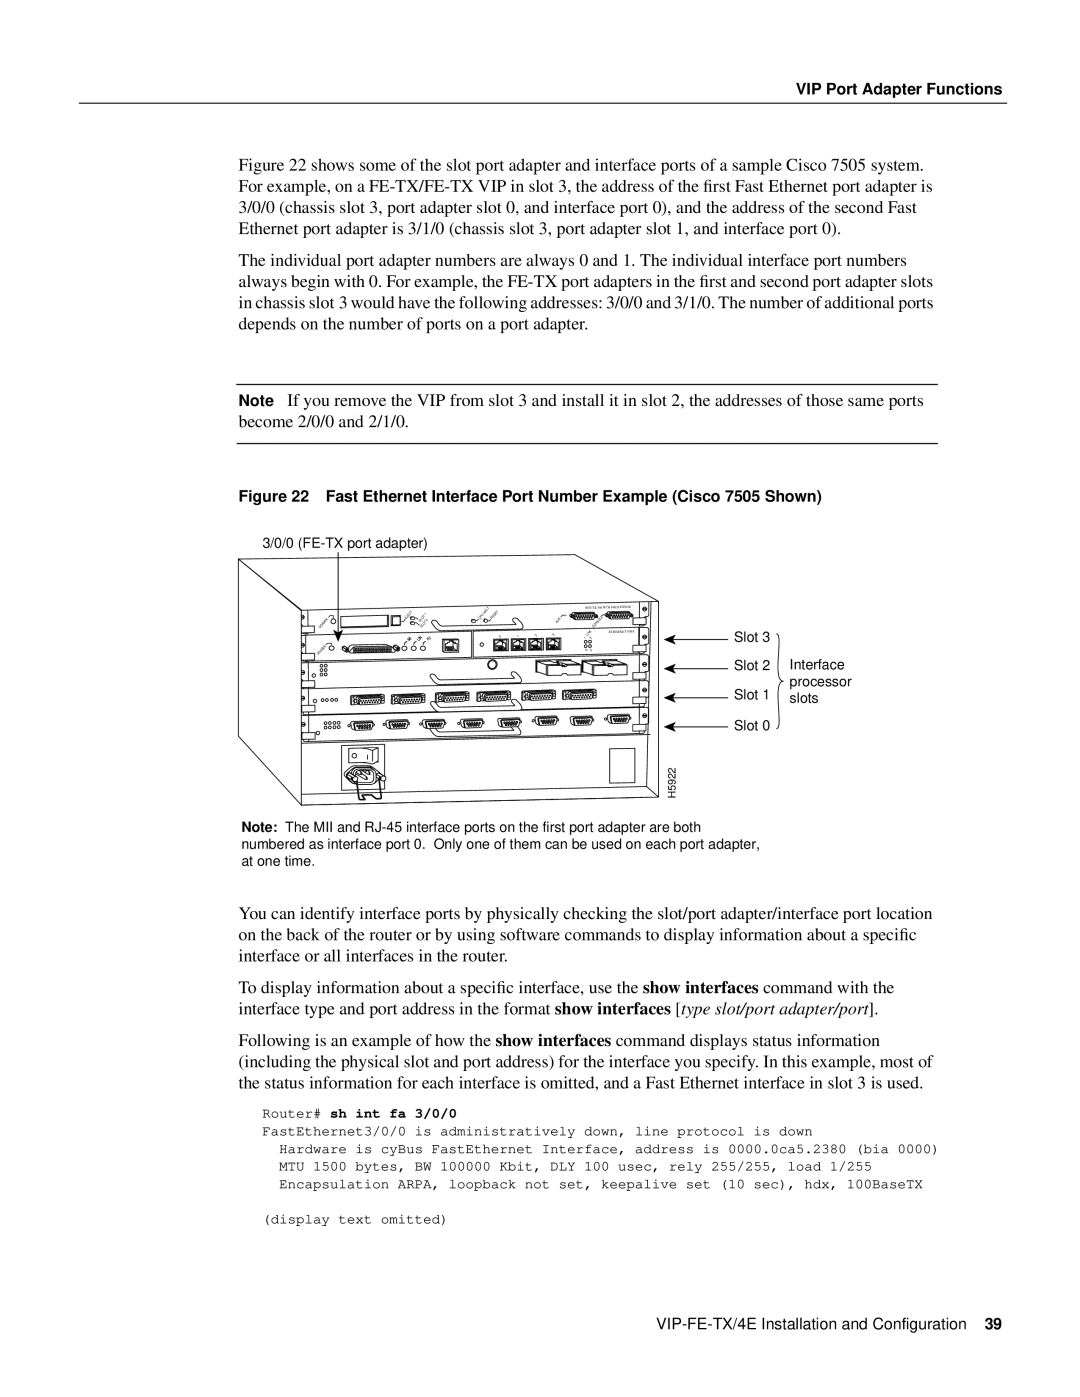 Cisco Systems VIP-FE-TX/4E manual Router# sh int fa 3/0/0, processor 